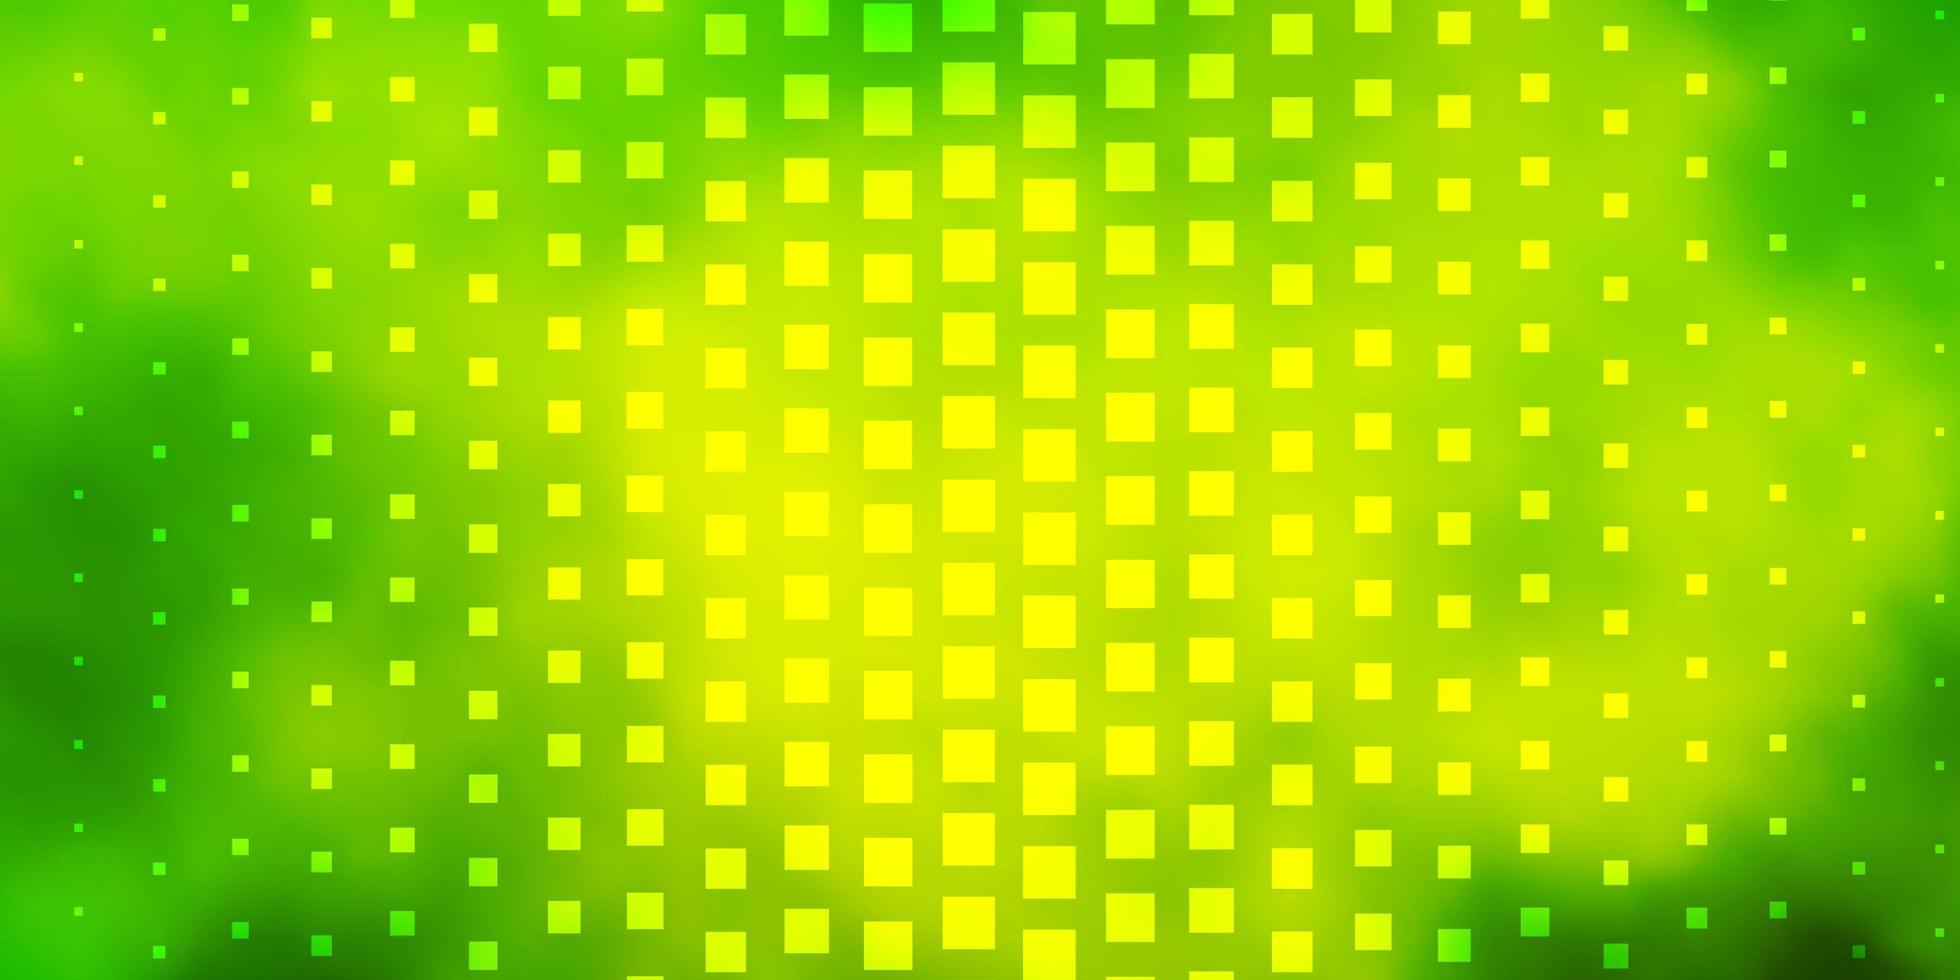 ljusgrön, gul vektorbakgrund med rektanglar. vektor